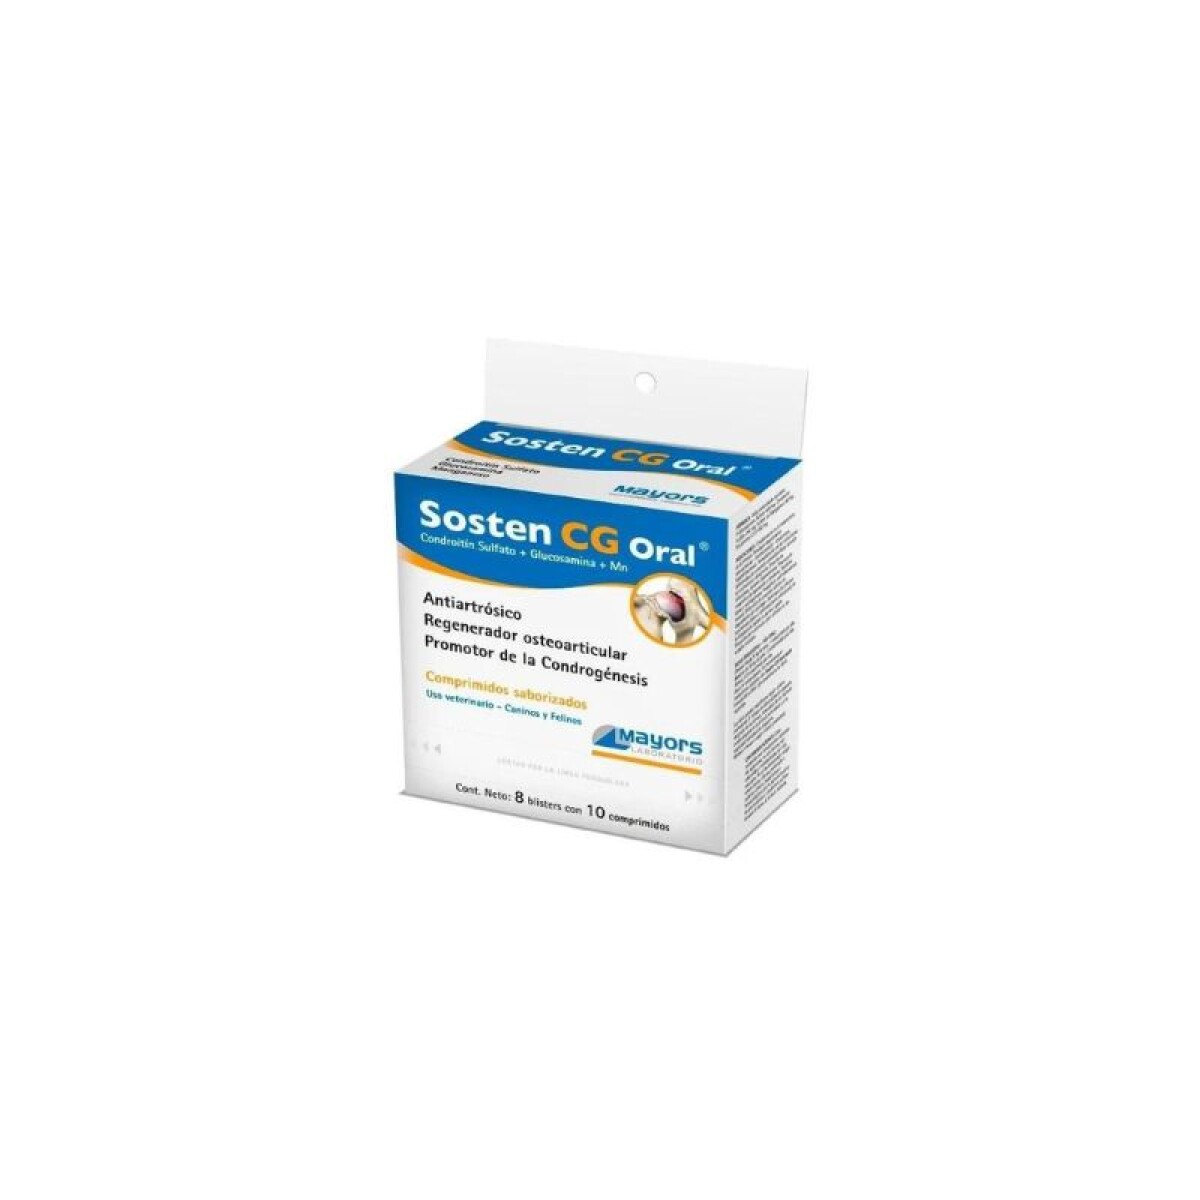 SOSTEN CG BLISTER 10 COMPRIMIDOS - Sosten Cg Blister 10 Comprimidos 